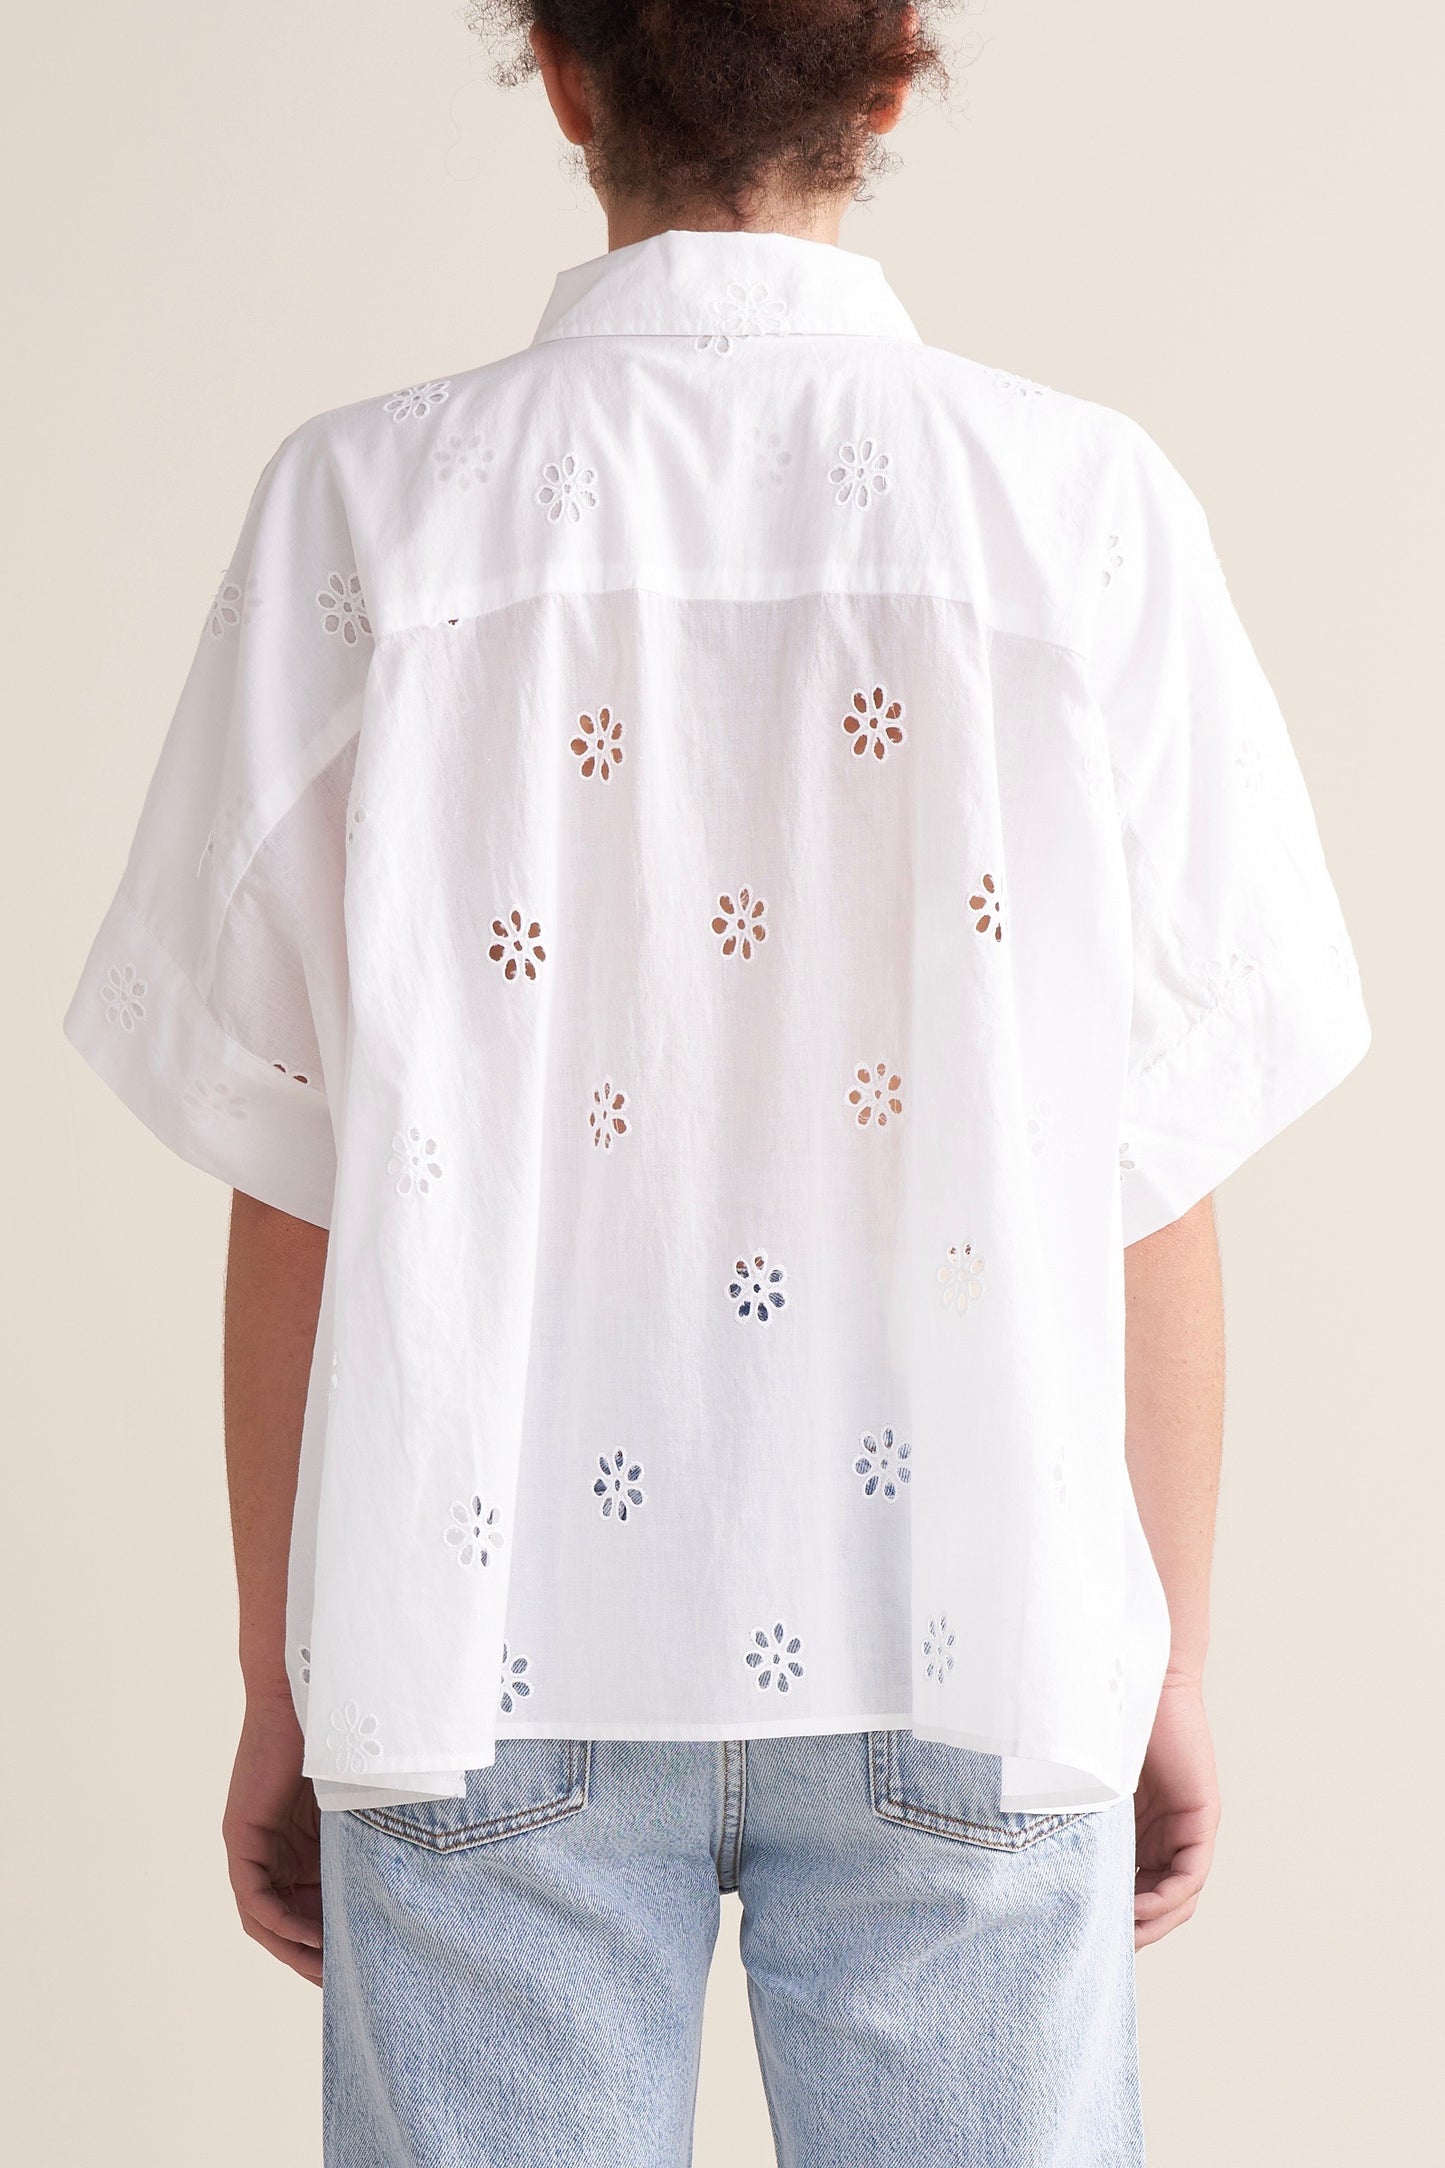 Bellerose - Cosmic T-Shirt: White